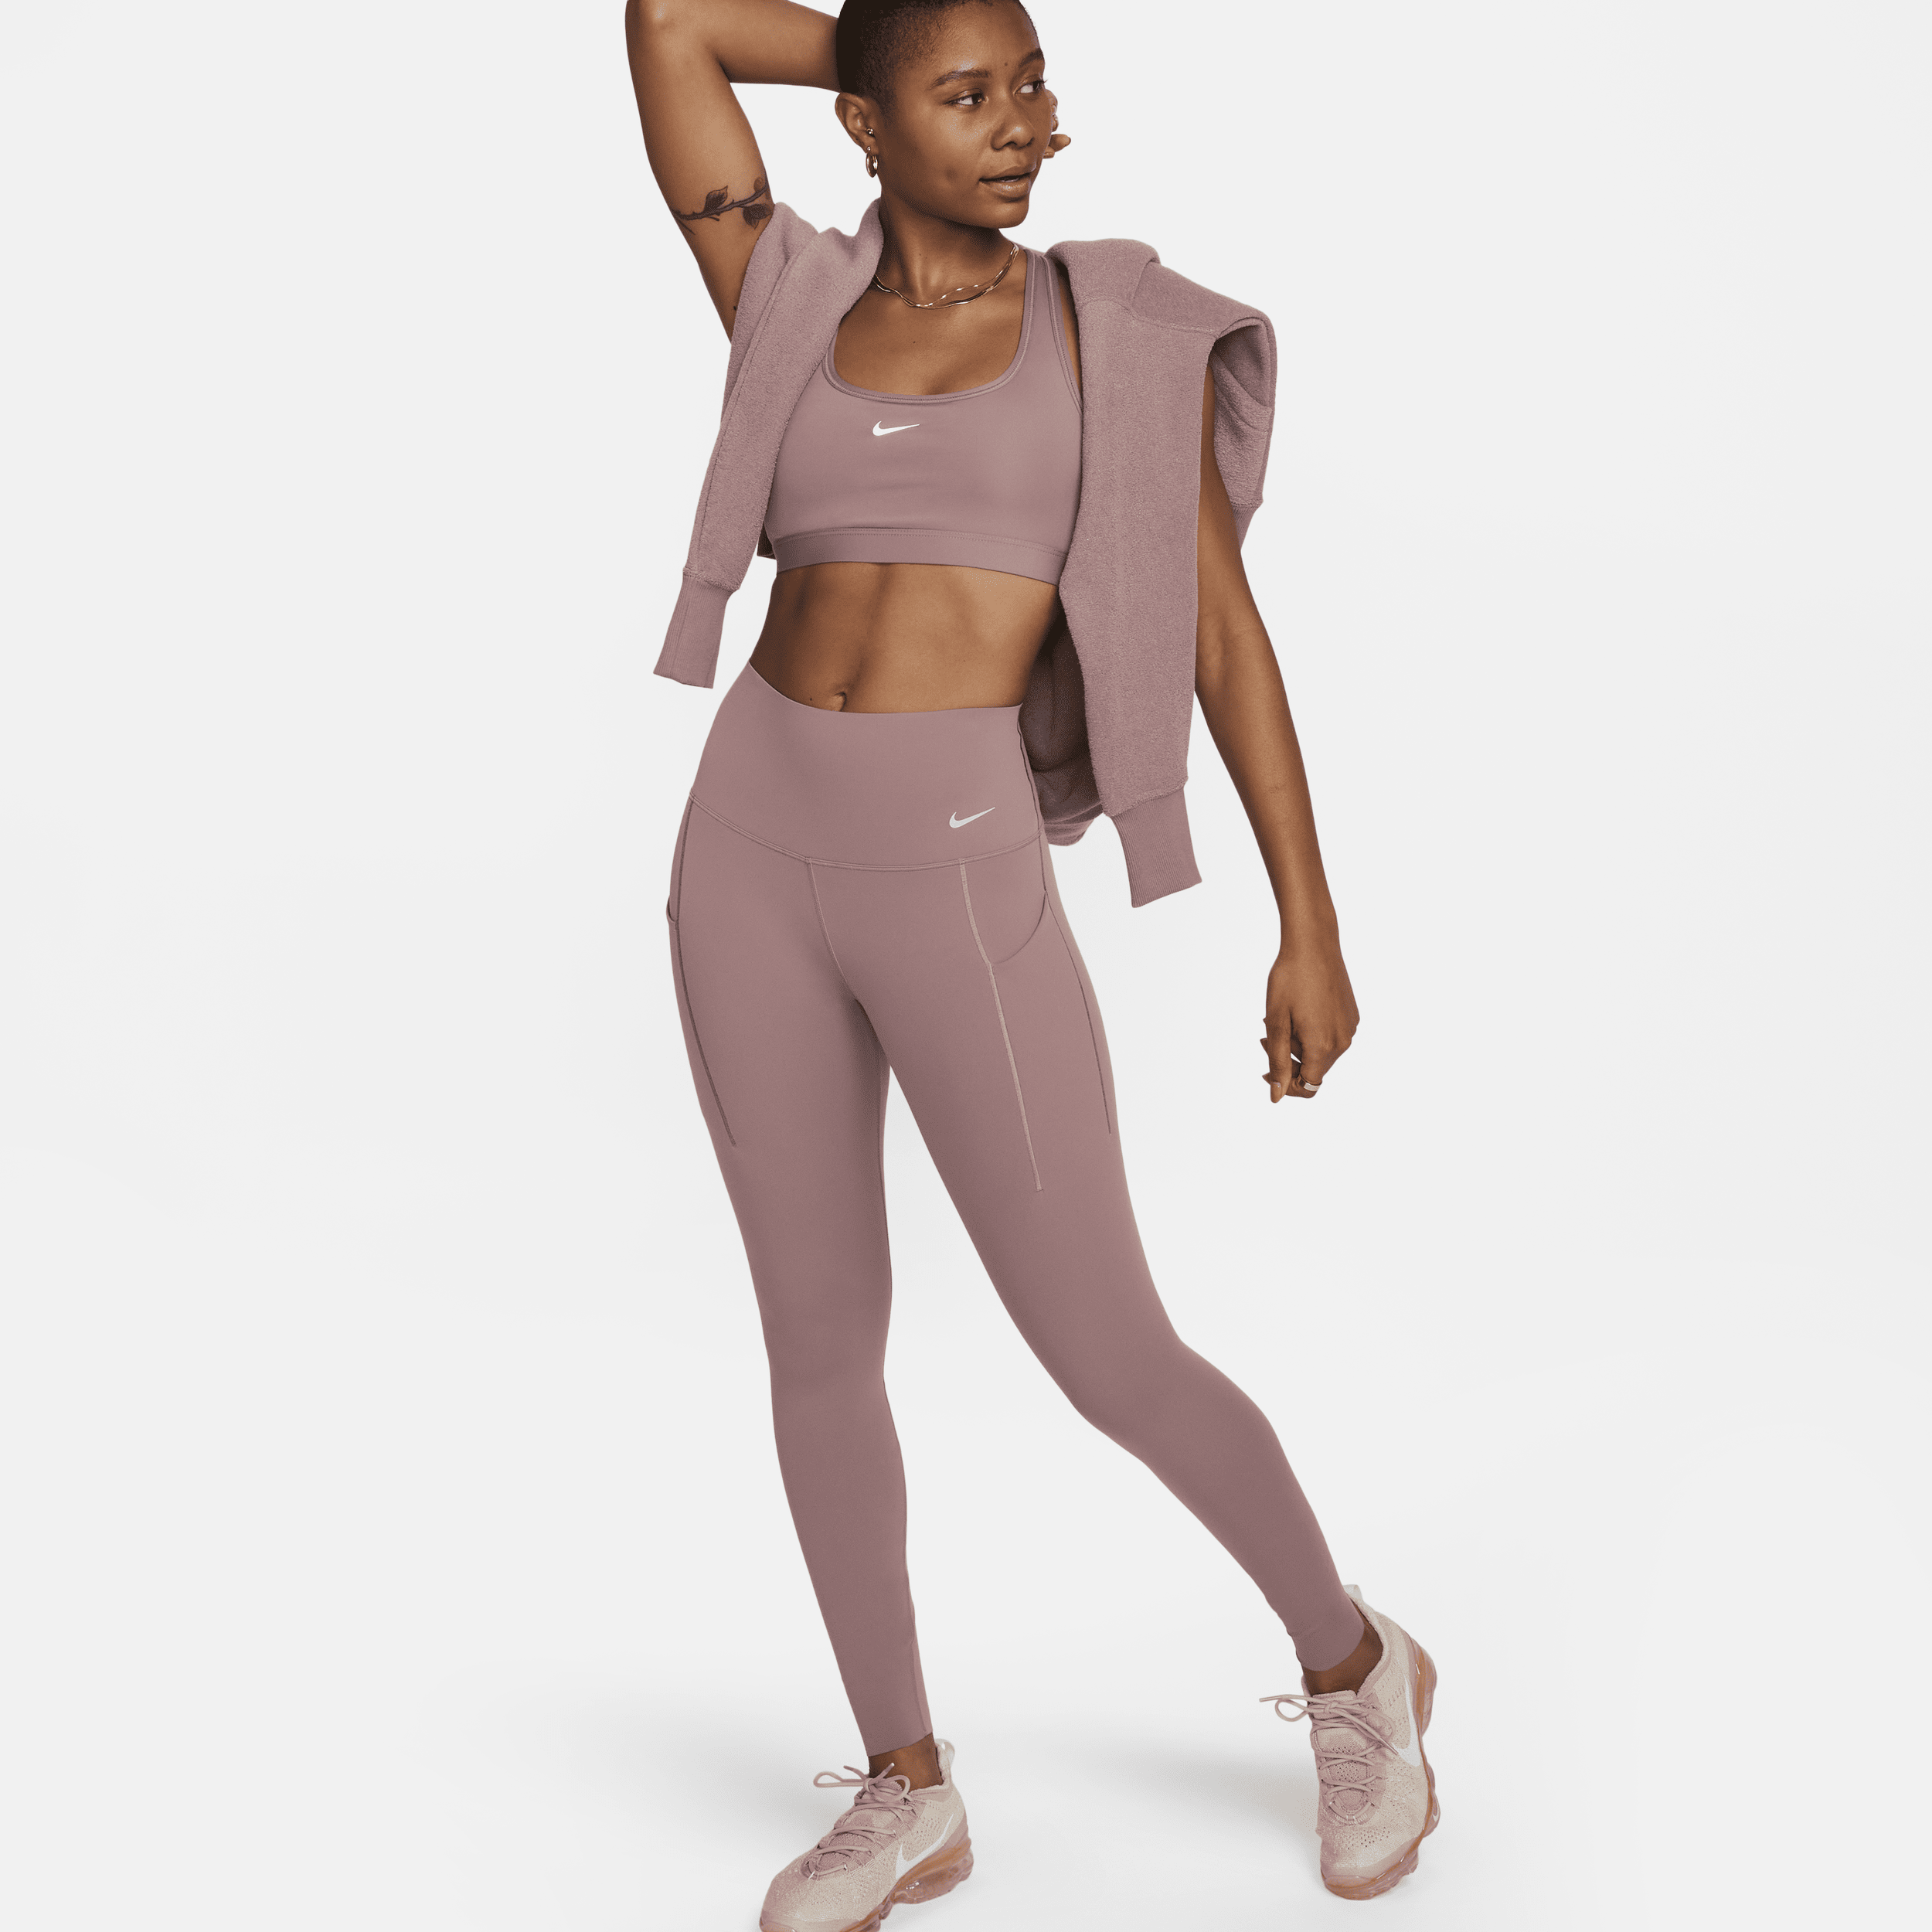 Nike Universa-leggings i fuld længde med medium støtte, høj talje og lommer til kvinder - lilla